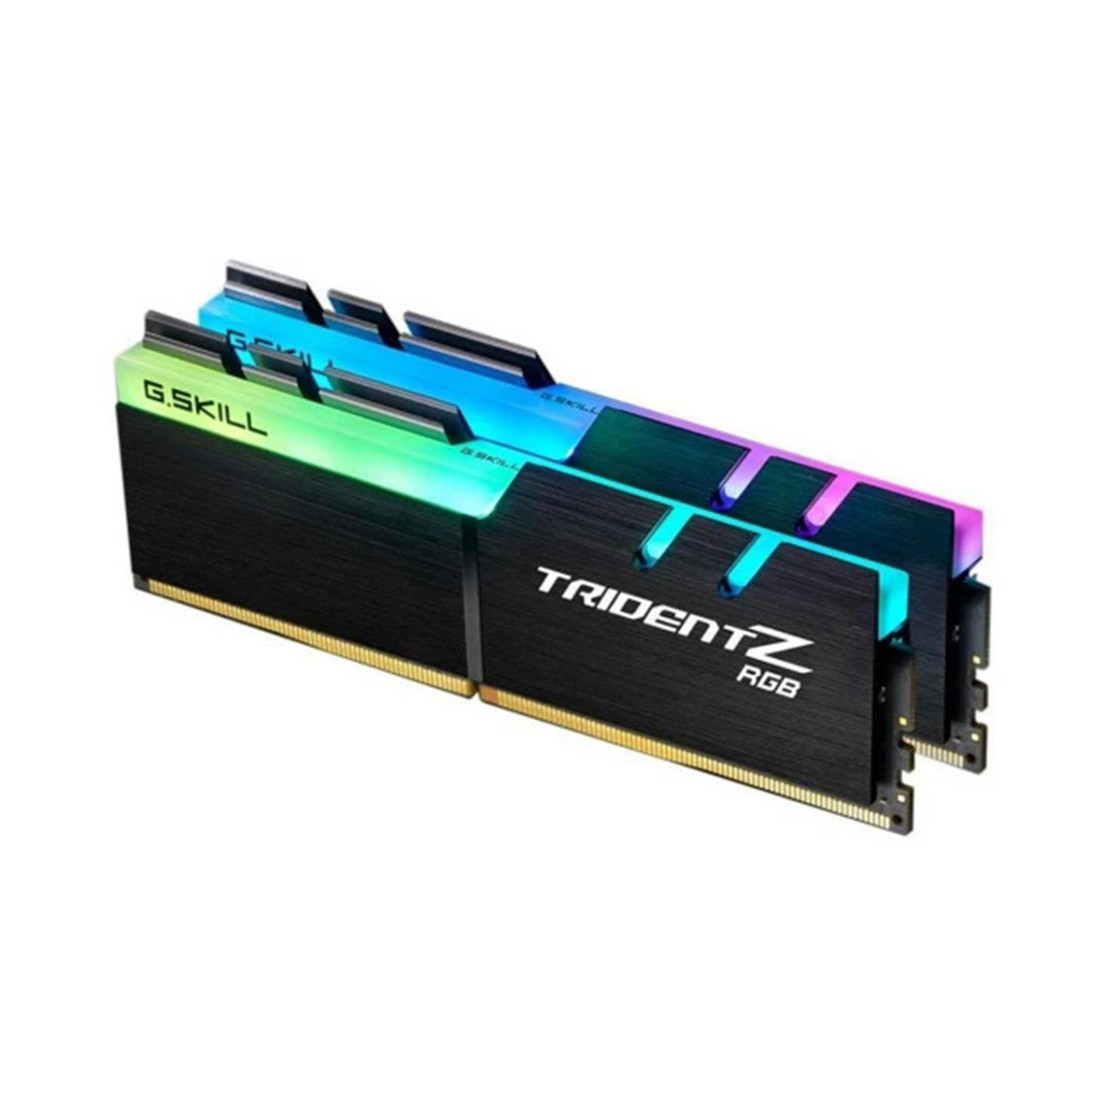 Комплект модулей памяти  G.SKILL  TridentZ RGB F4-3200C16D-16GTZR (Kit 2x8GB)  DDR4  16GB  DIMM   Черный